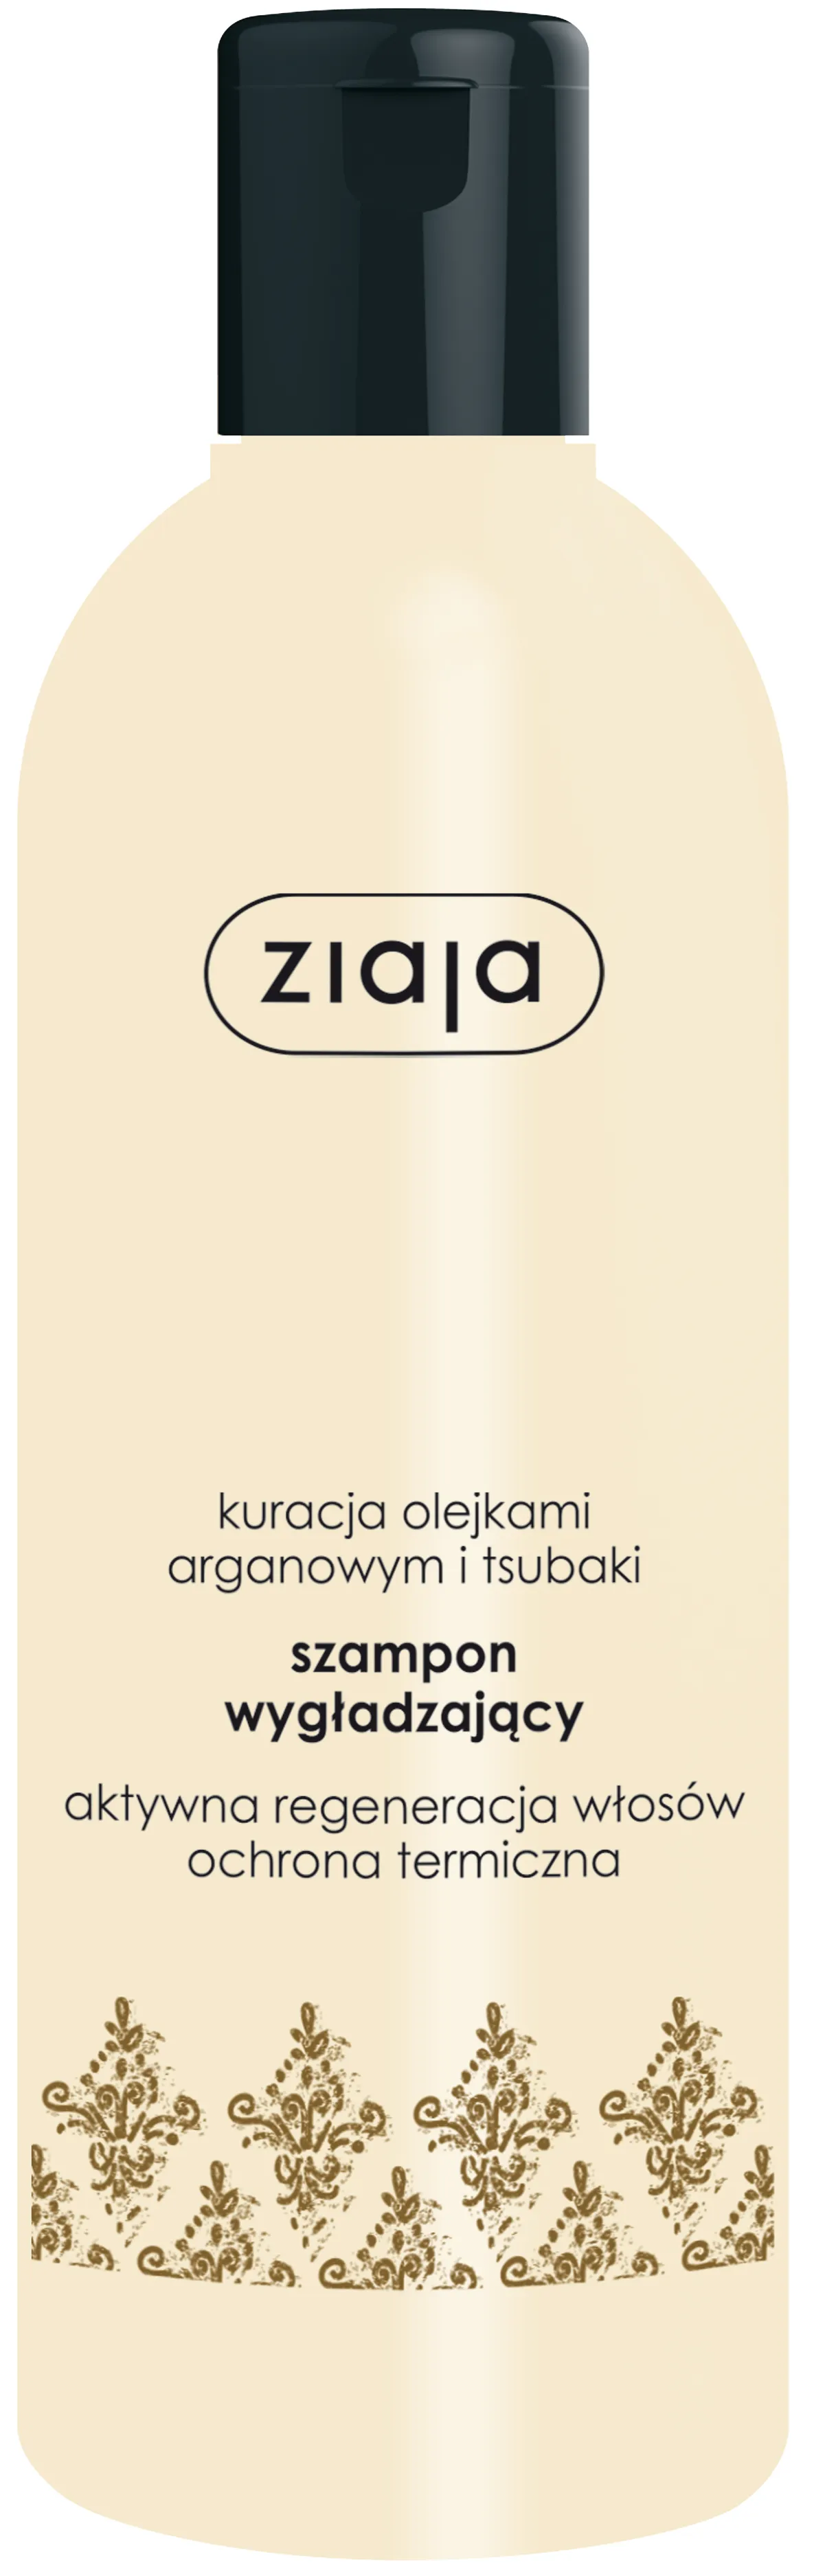 Ziaja Arganowa, szampon wygładzający, 300 ml